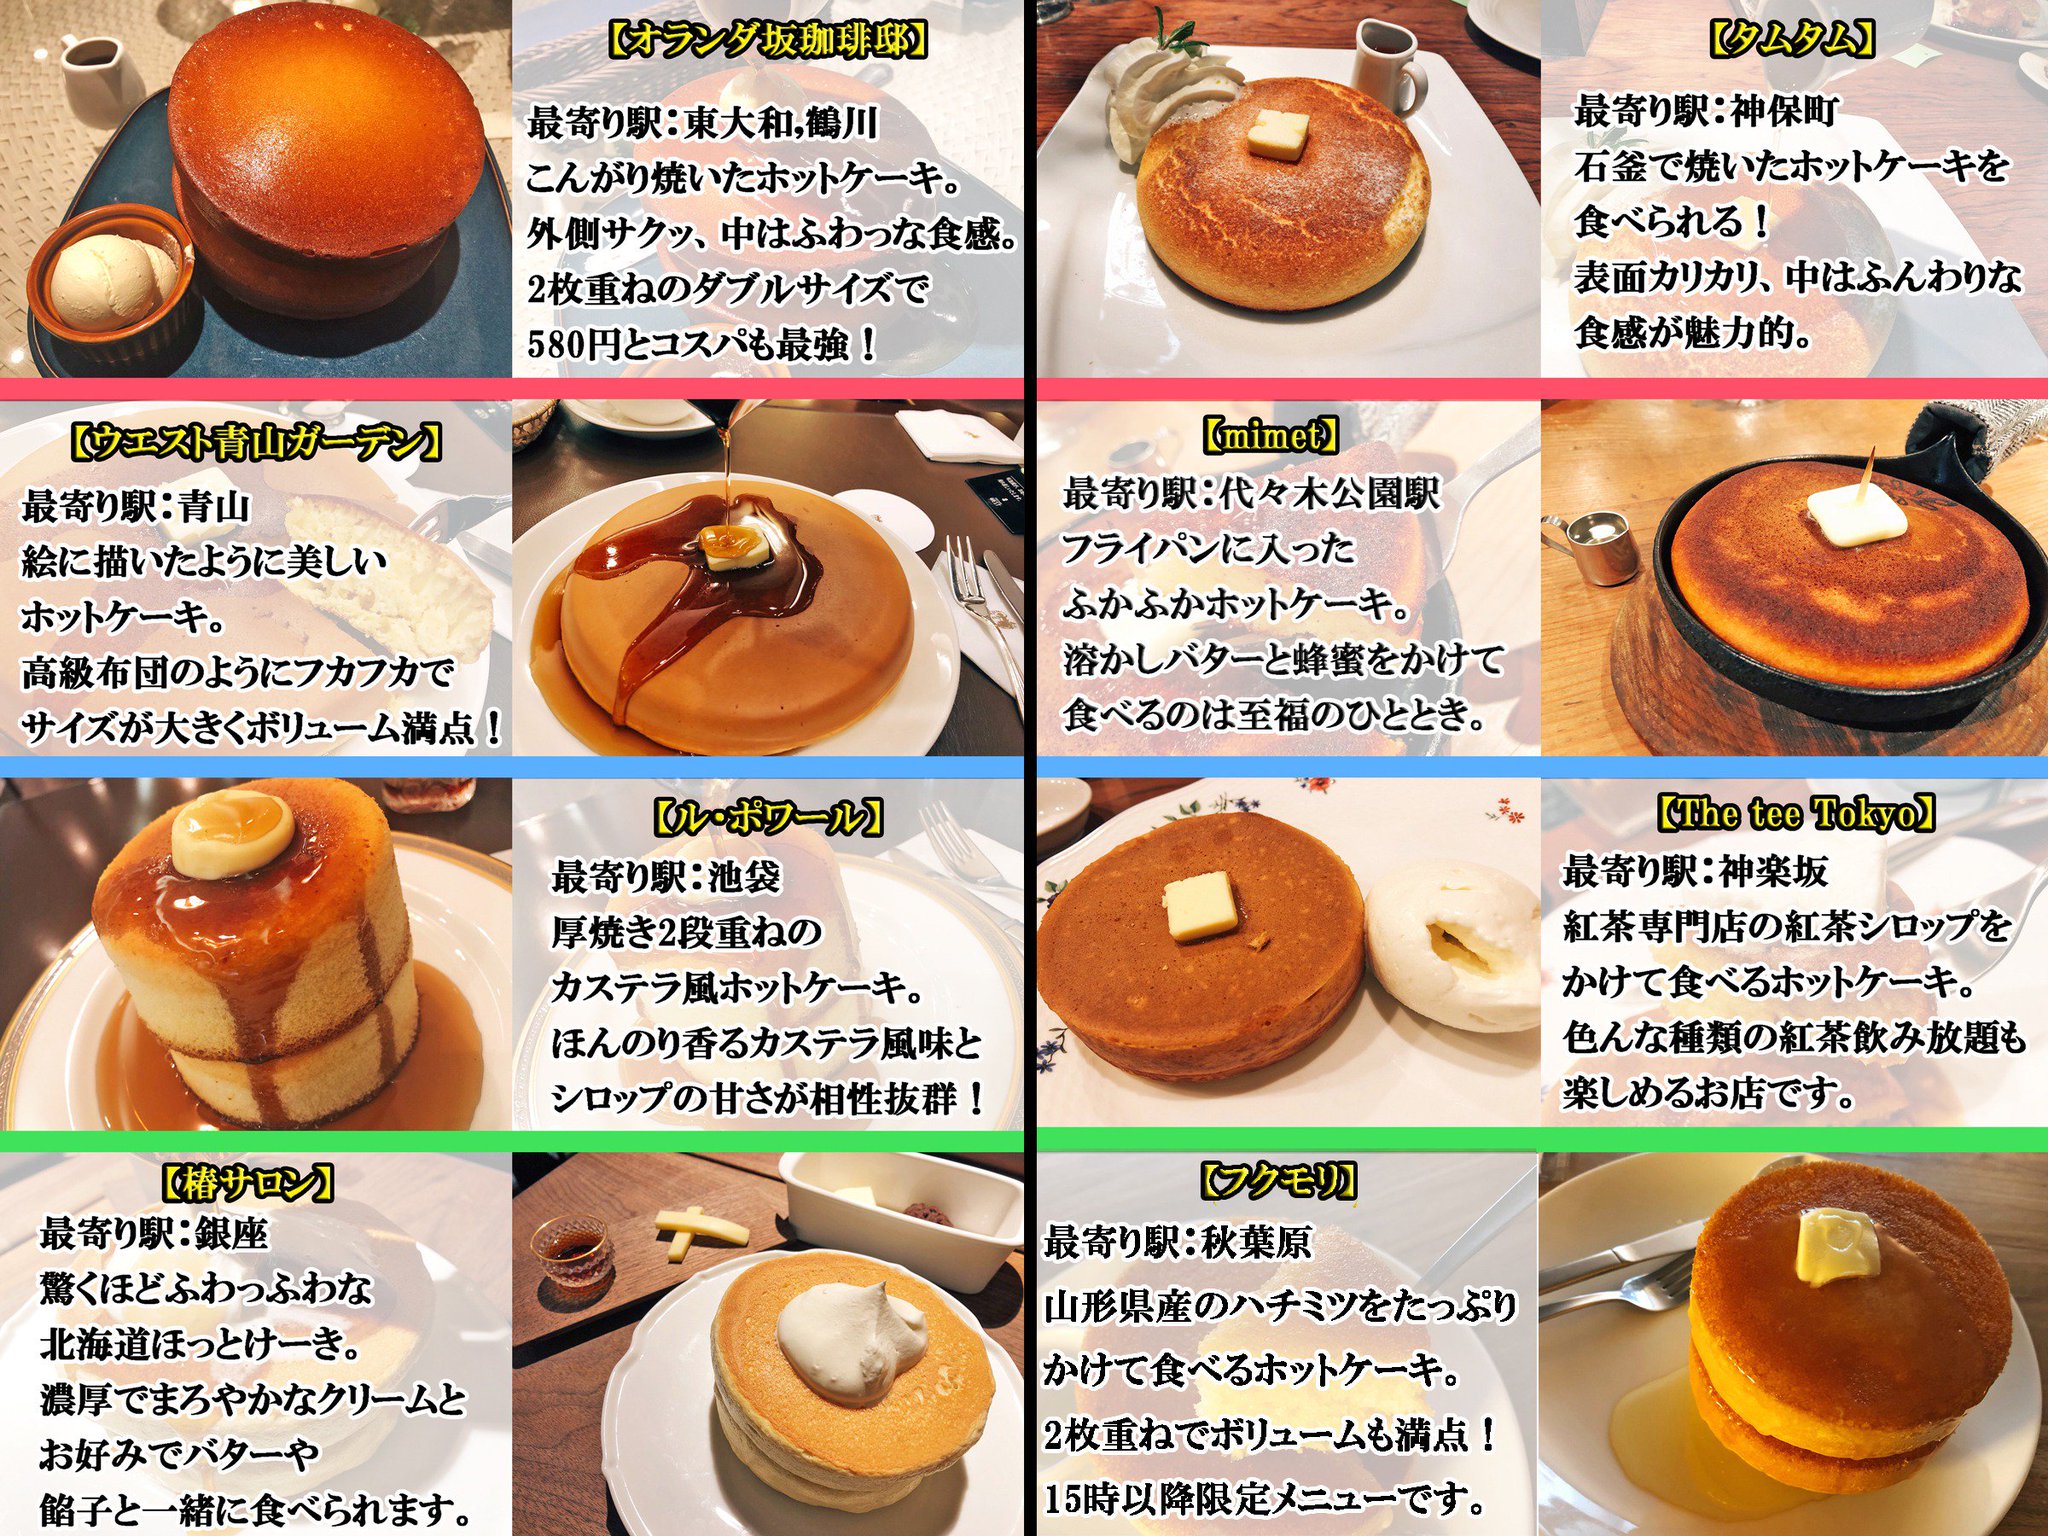 唯一無二の絶品グルメ むにぐるめ 東京で絶対に食べてほしい シリーズが増えてきたので チェックしやすいようにスイーツ括りで改めて投稿します 1枚目 パンケーキまとめ 2枚目 ホットケーキまとめ 3枚目 抹茶まとめ 4枚目 チーズケーキまとめ